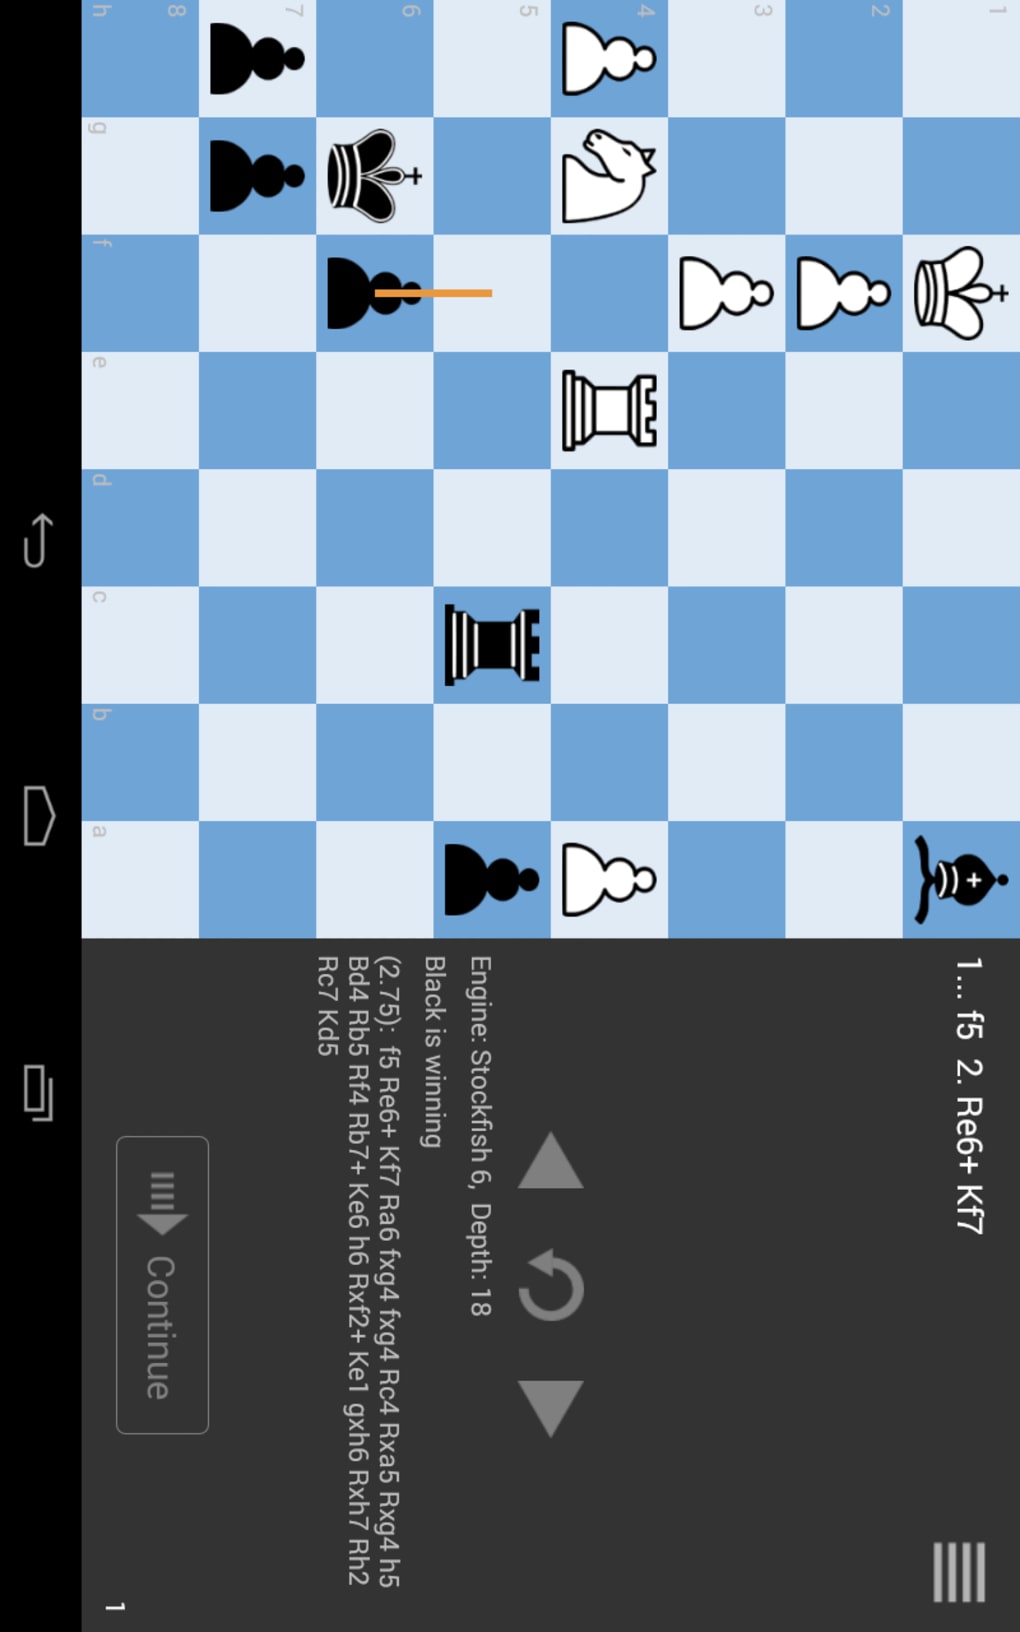 Táticas de Xadrez (Puzzles) APK (Android Game) - Baixar Grátis